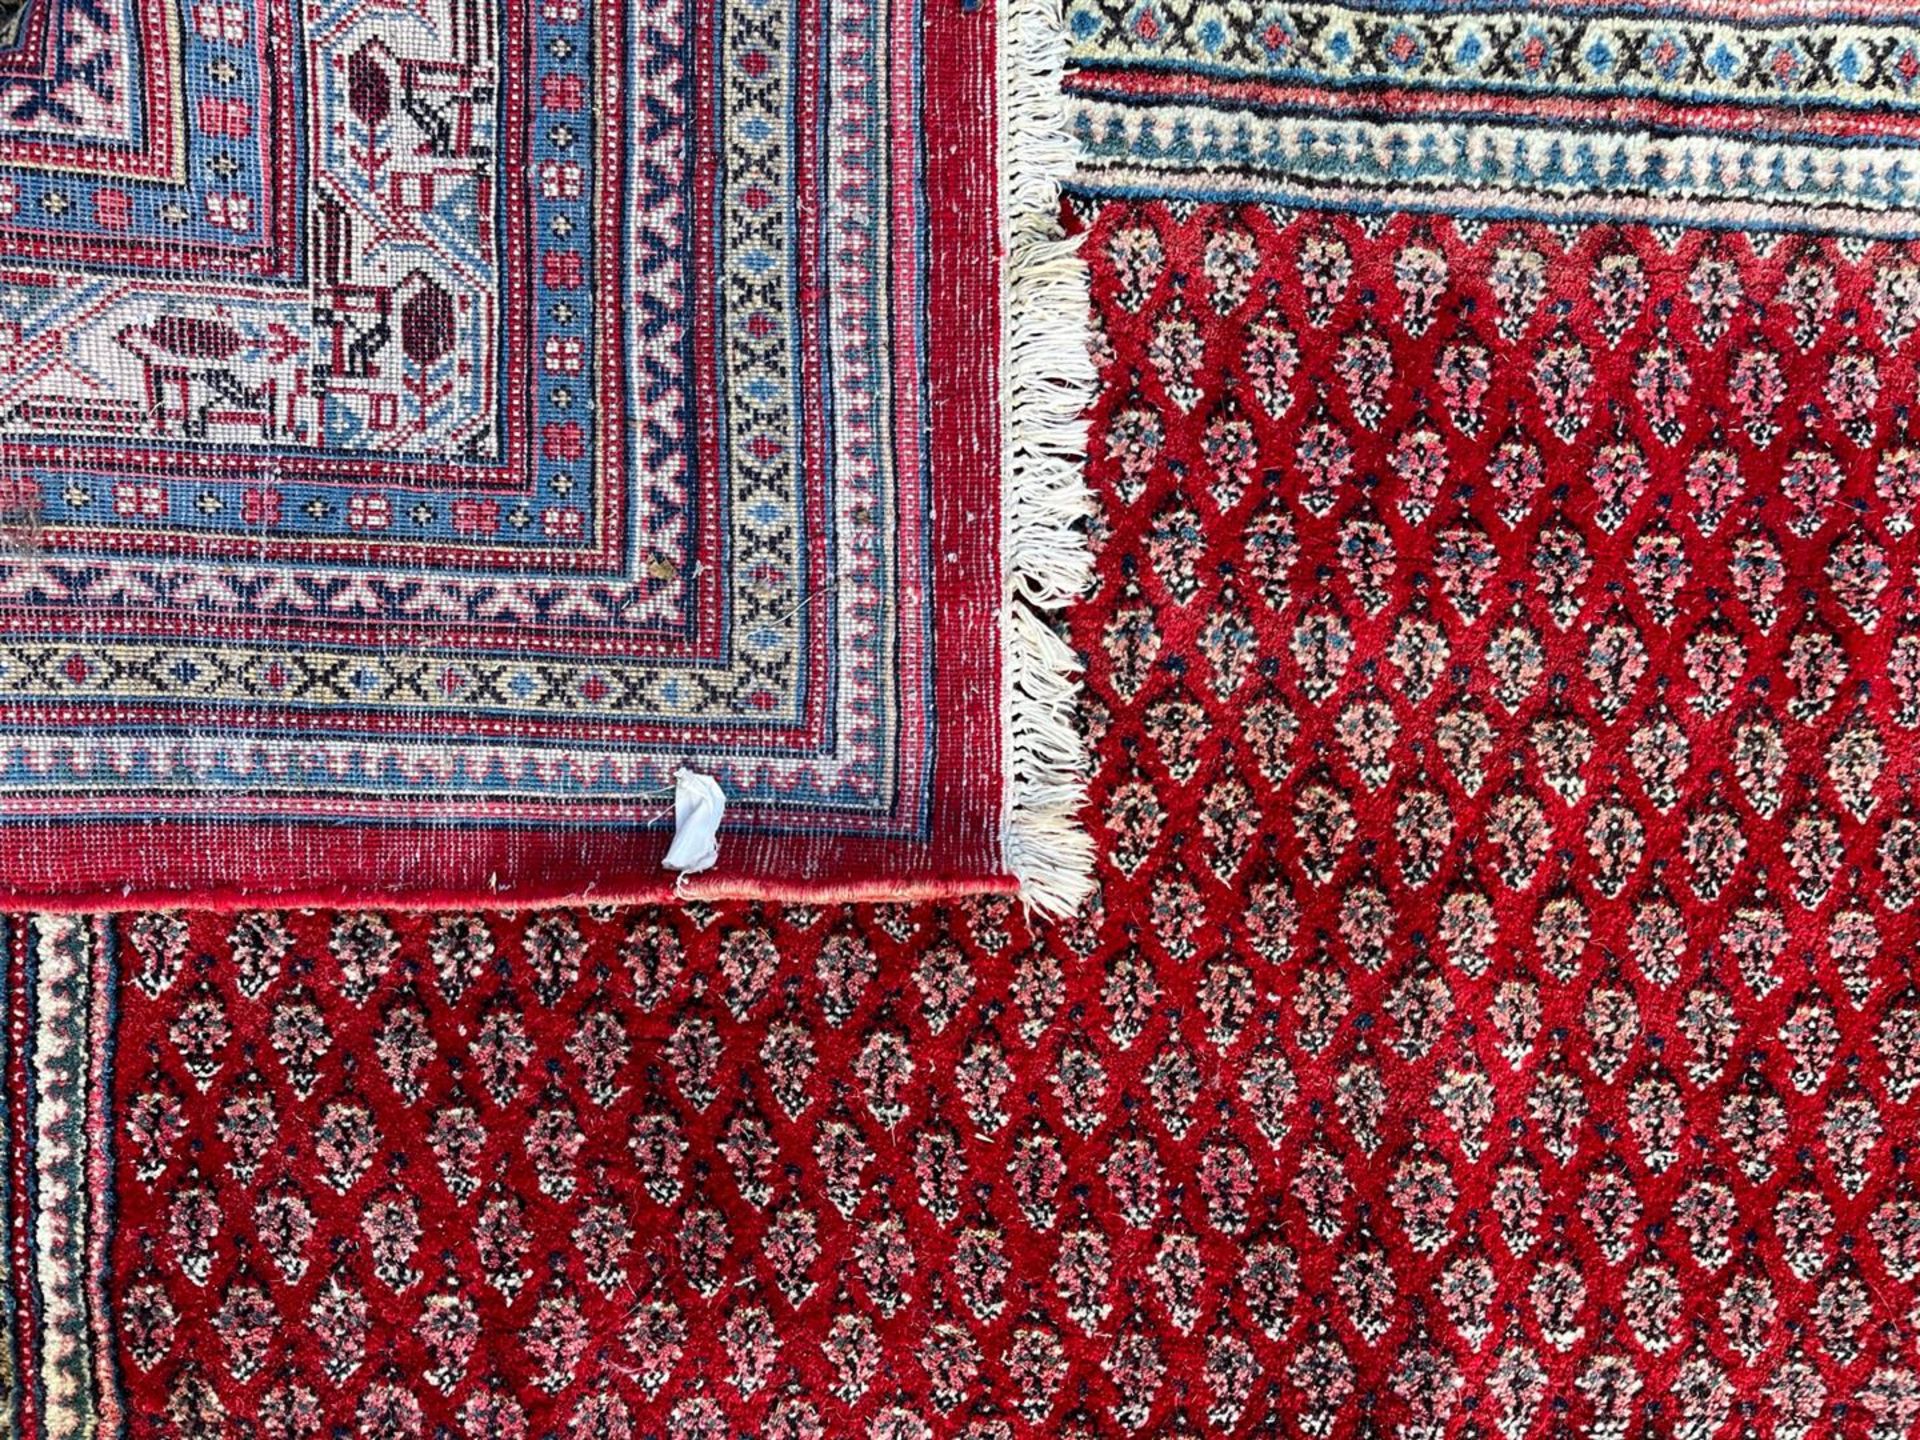 Mihr carpet - Image 3 of 3